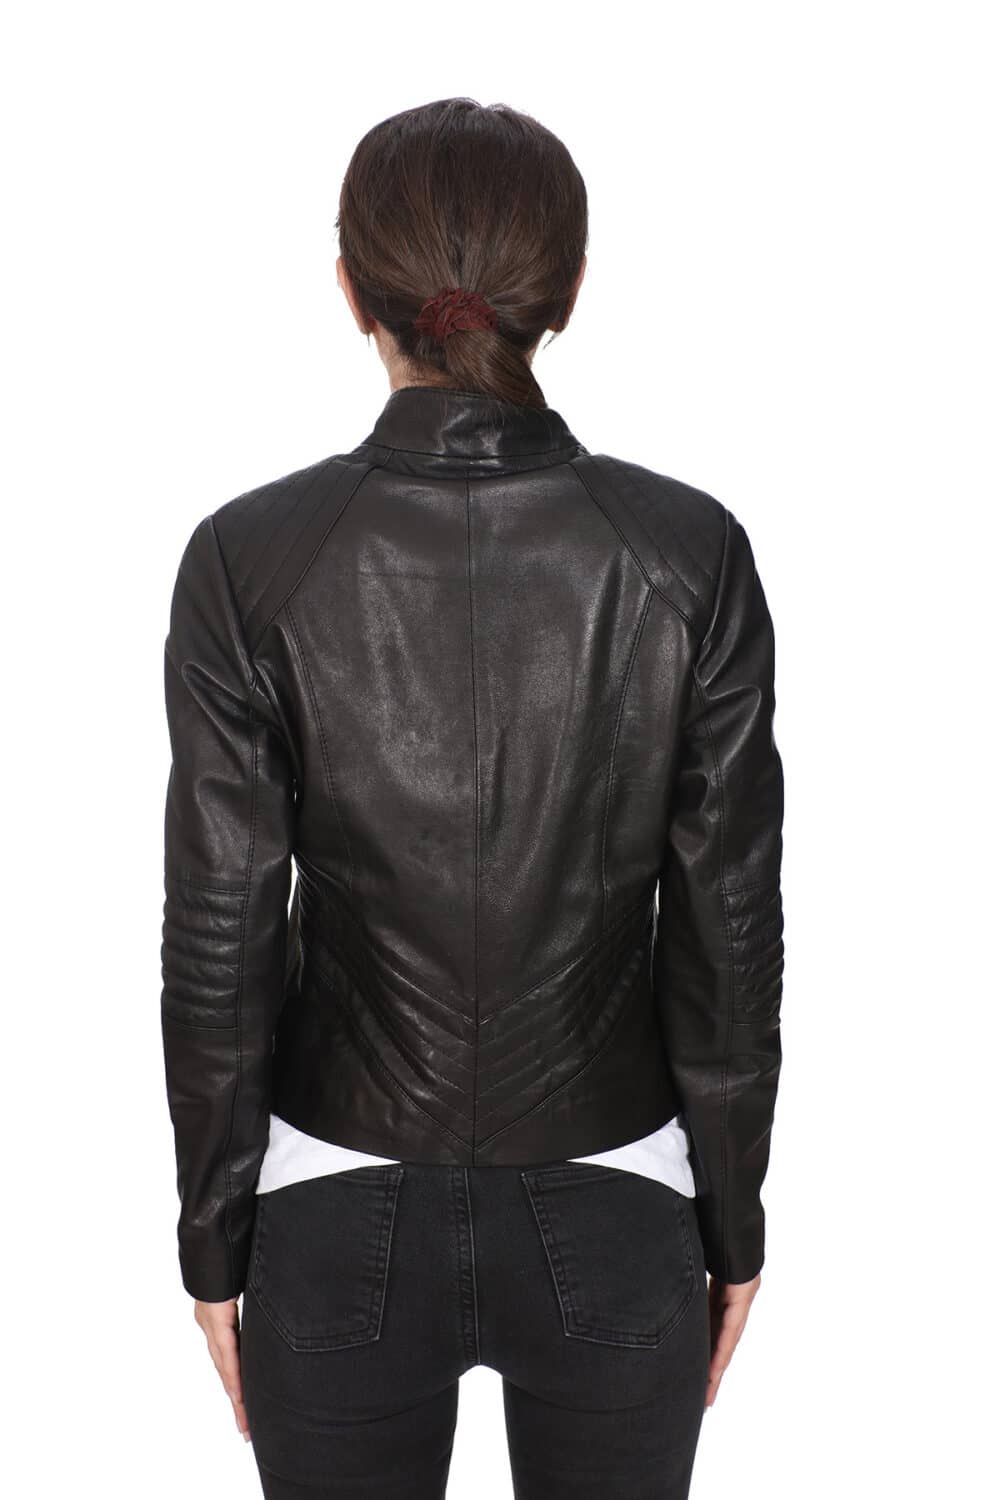 Women's 100 % Real Black Leather Biker Style Jacket